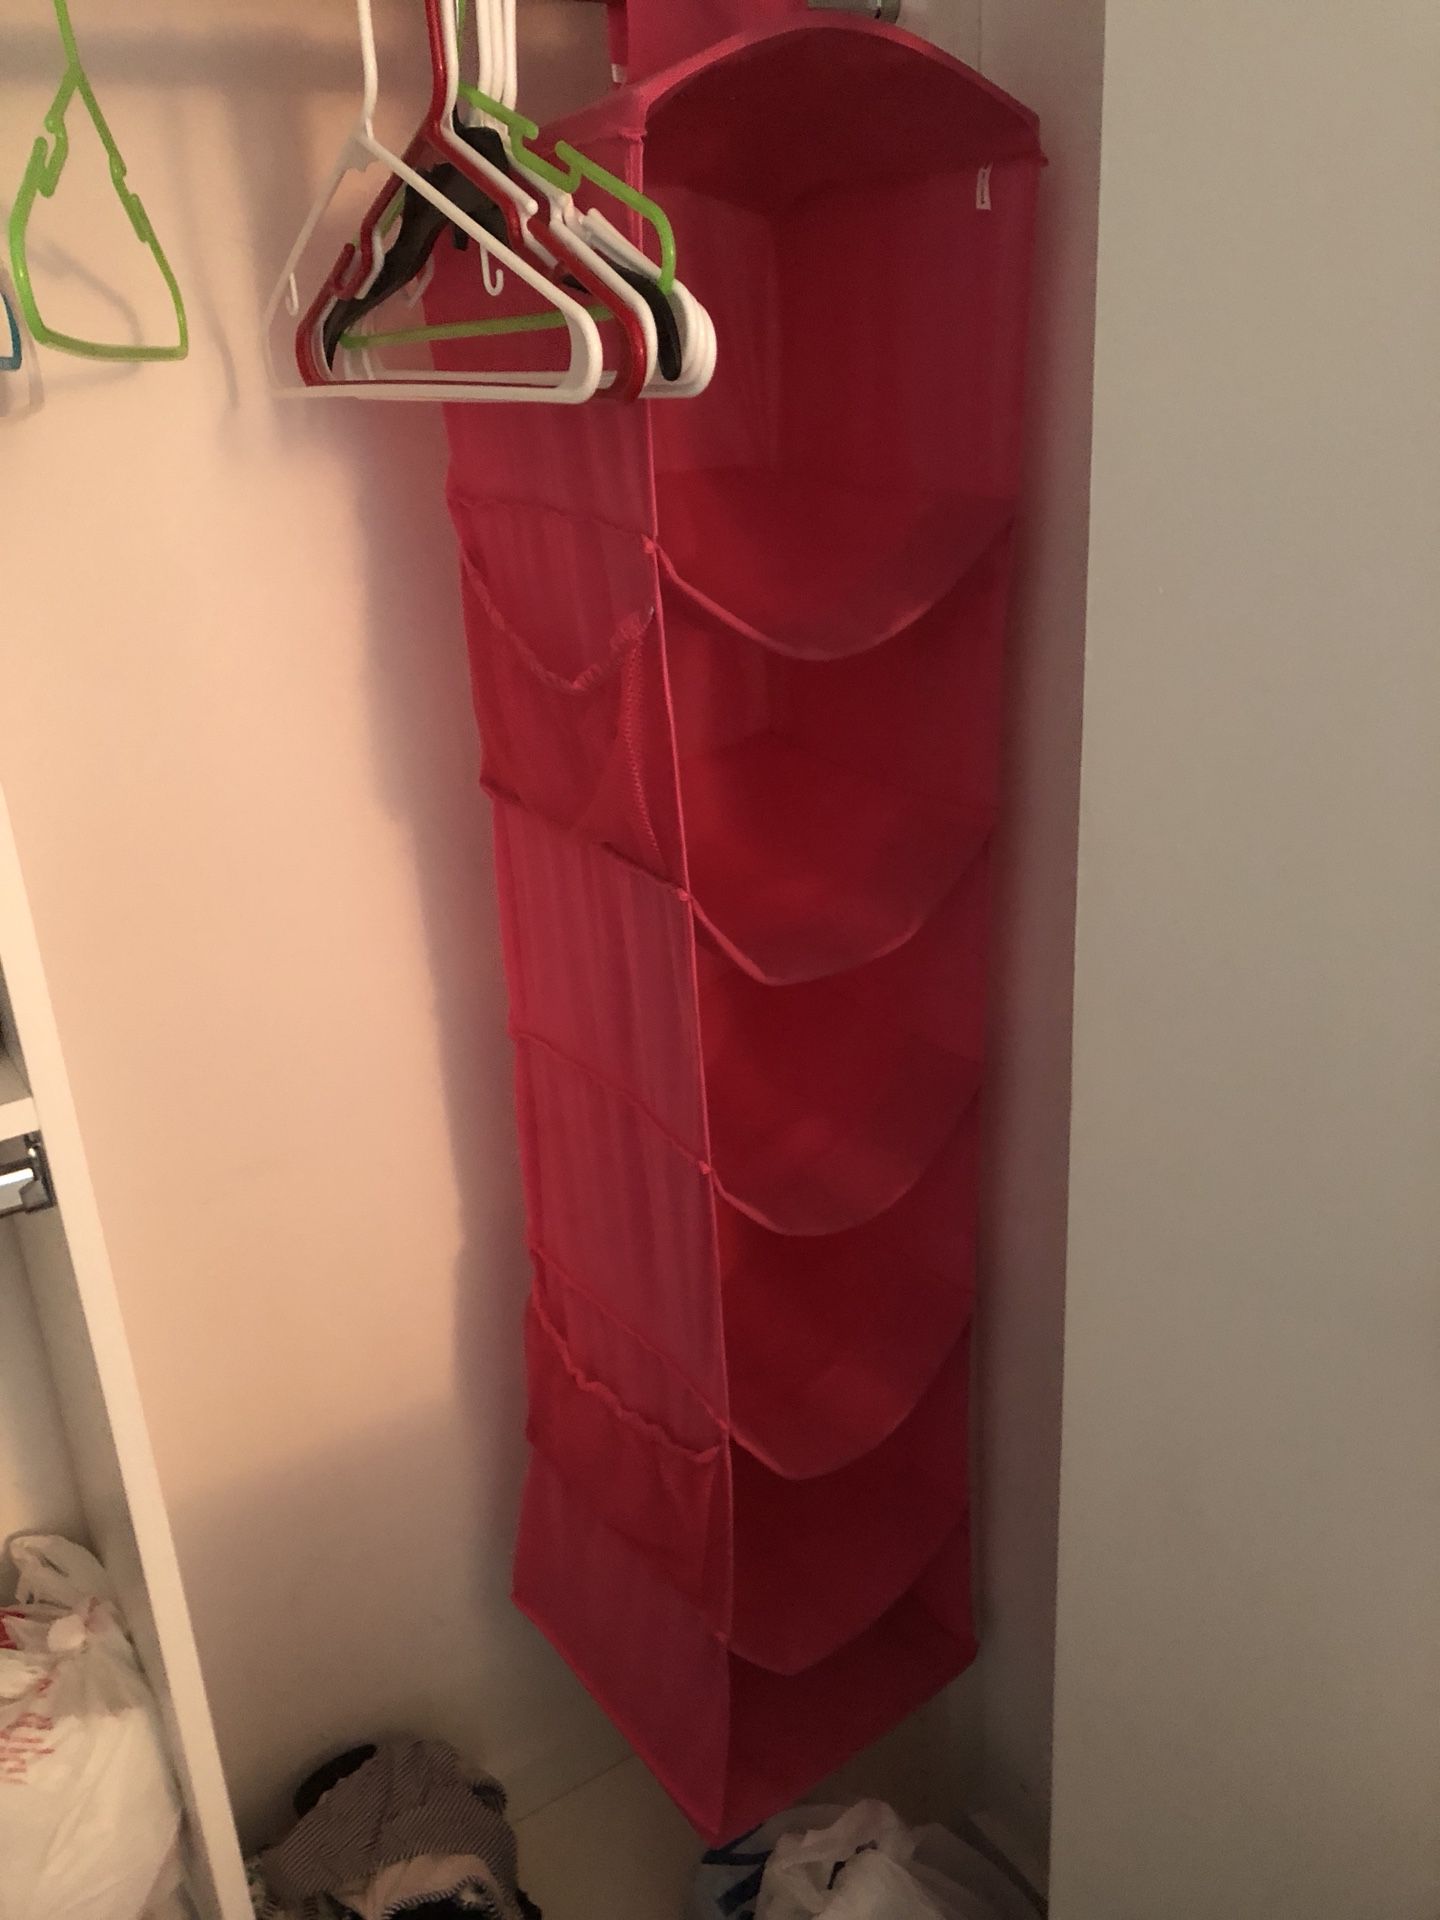 Hanging closet organizer pink